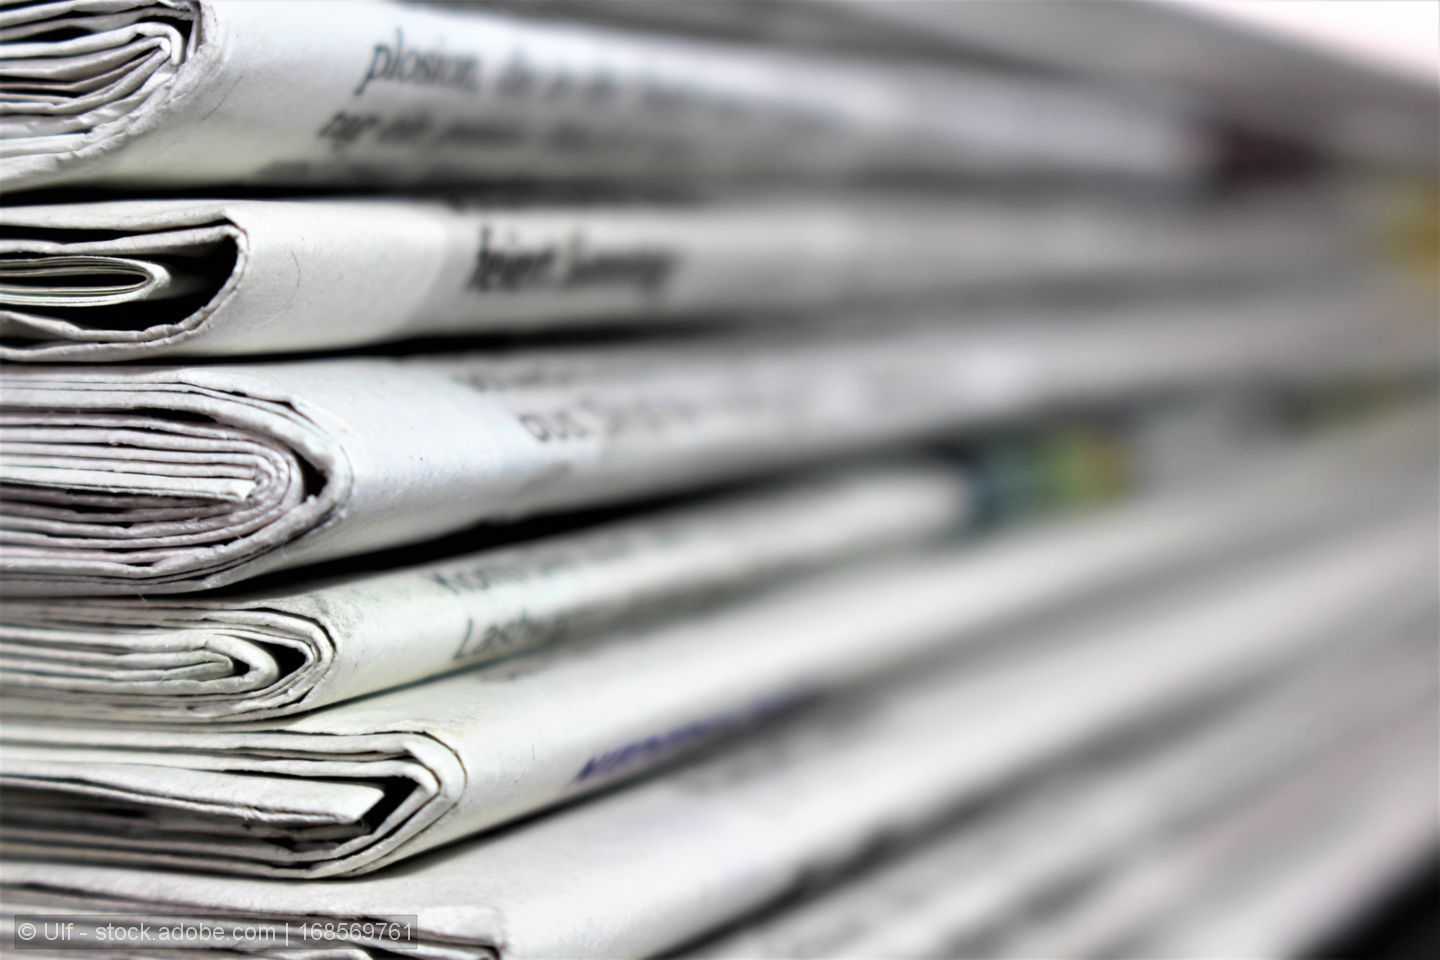 India cuts BCD tariffs on newsprint imports to 5 per cent